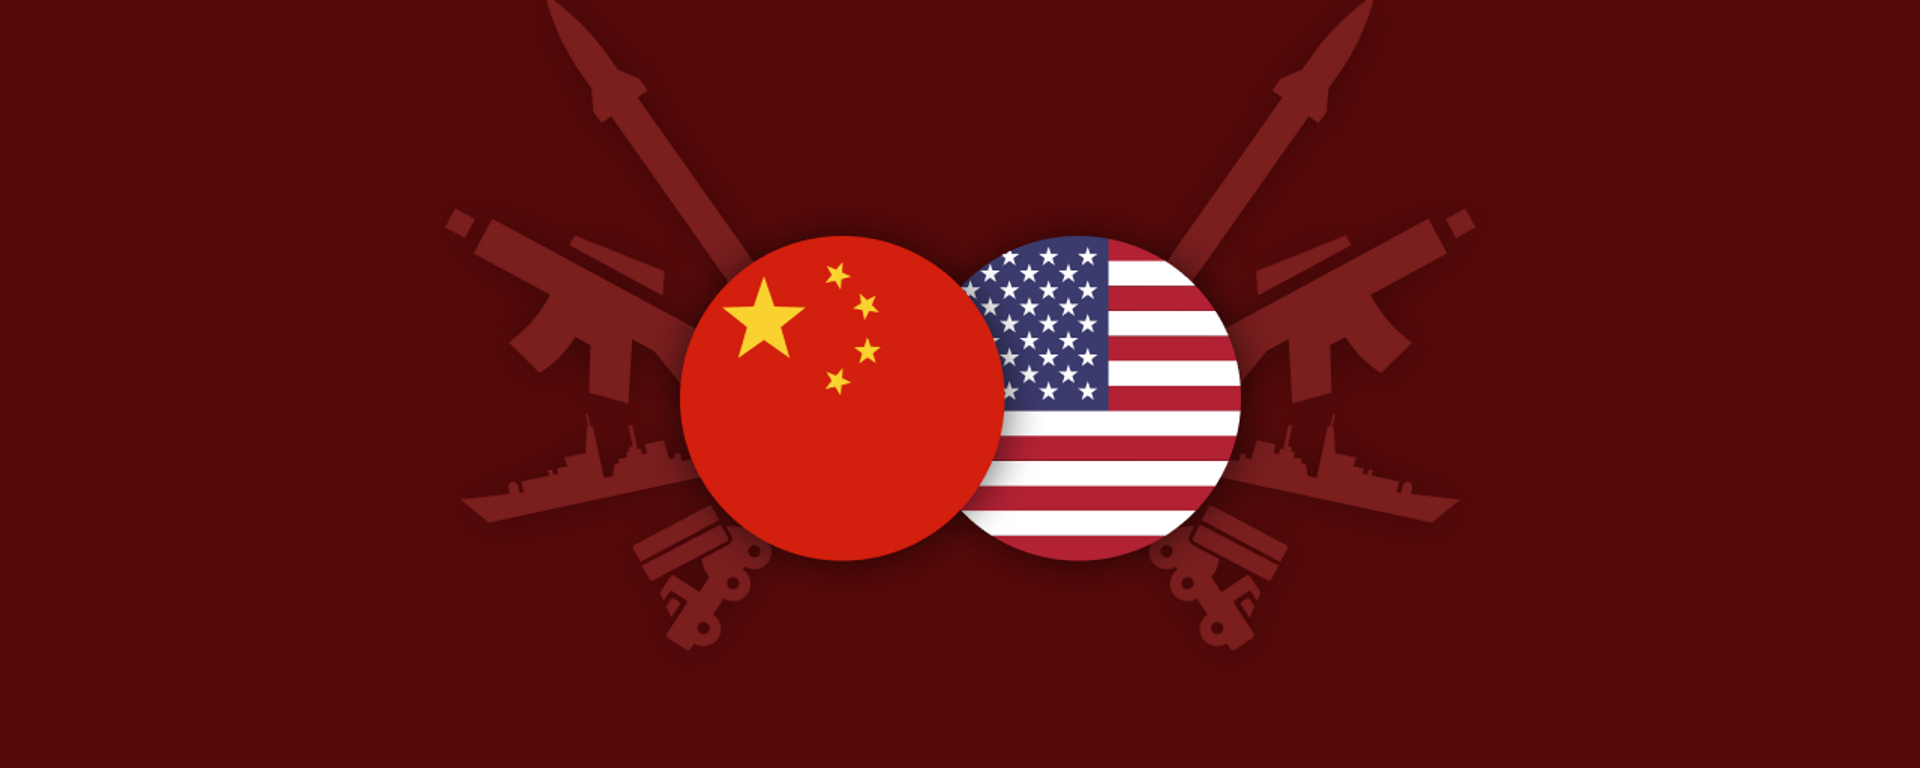 Comparación del poder militar de China y EEUU - Sputnik Mundo, 1920, 10.02.2023